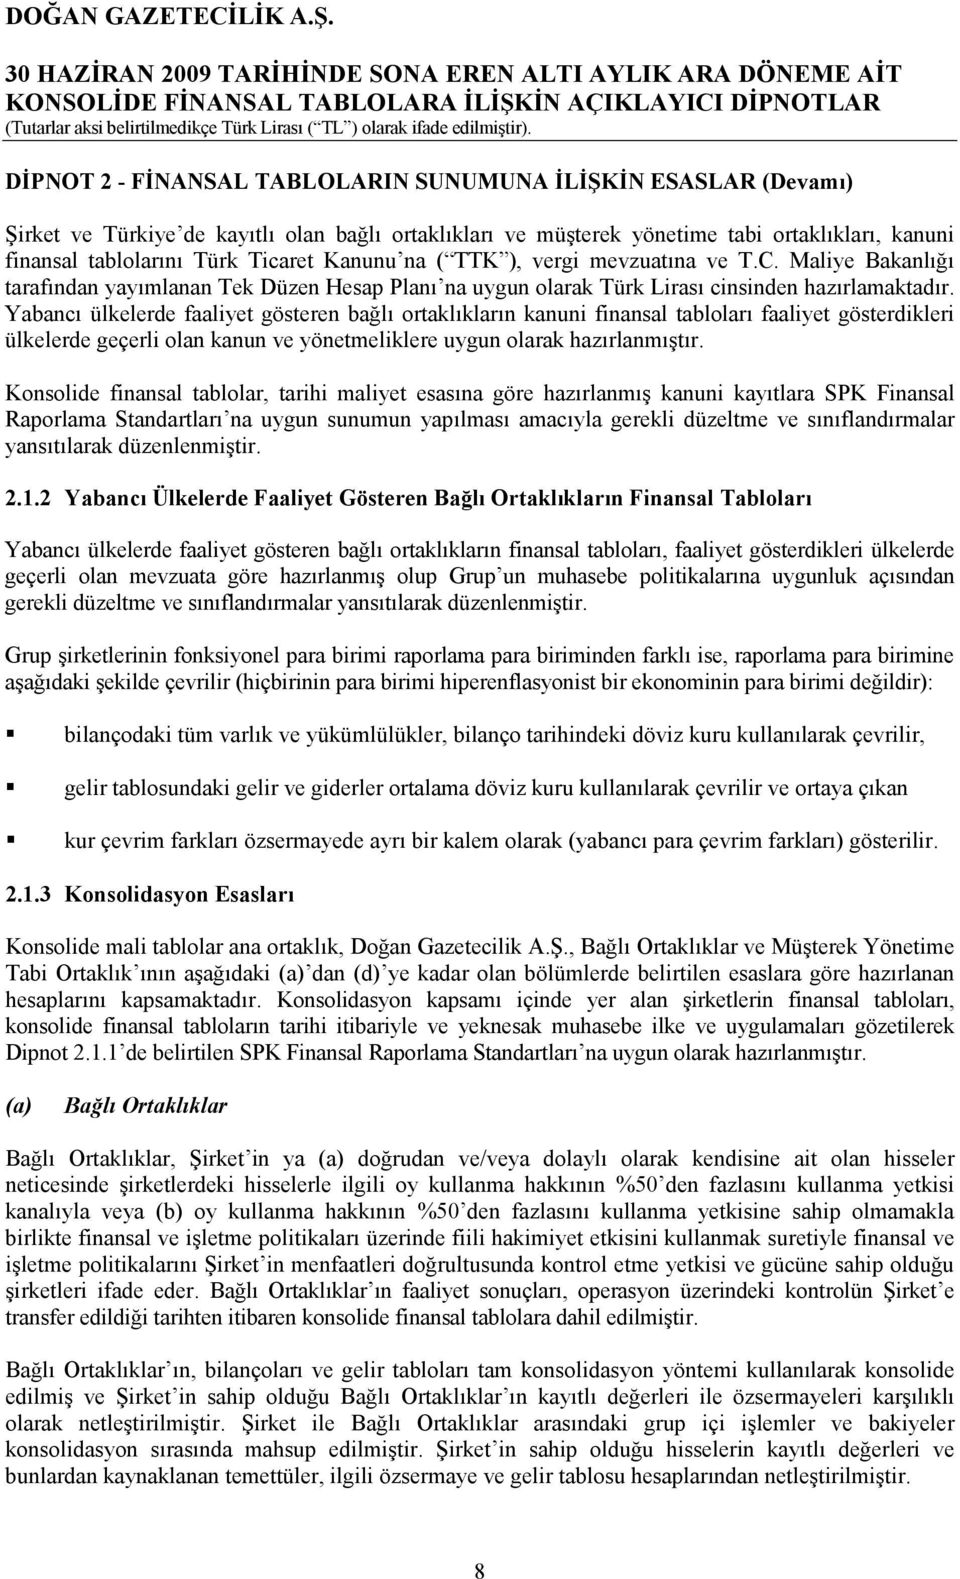 Kanunu na ( TTK ), vergi mevzuatına ve T.C. Maliye Bakanlığı tarafından yayımlanan Tek Düzen Hesap Planı na uygun olarak Türk Lirası cinsinden hazırlamaktadır.